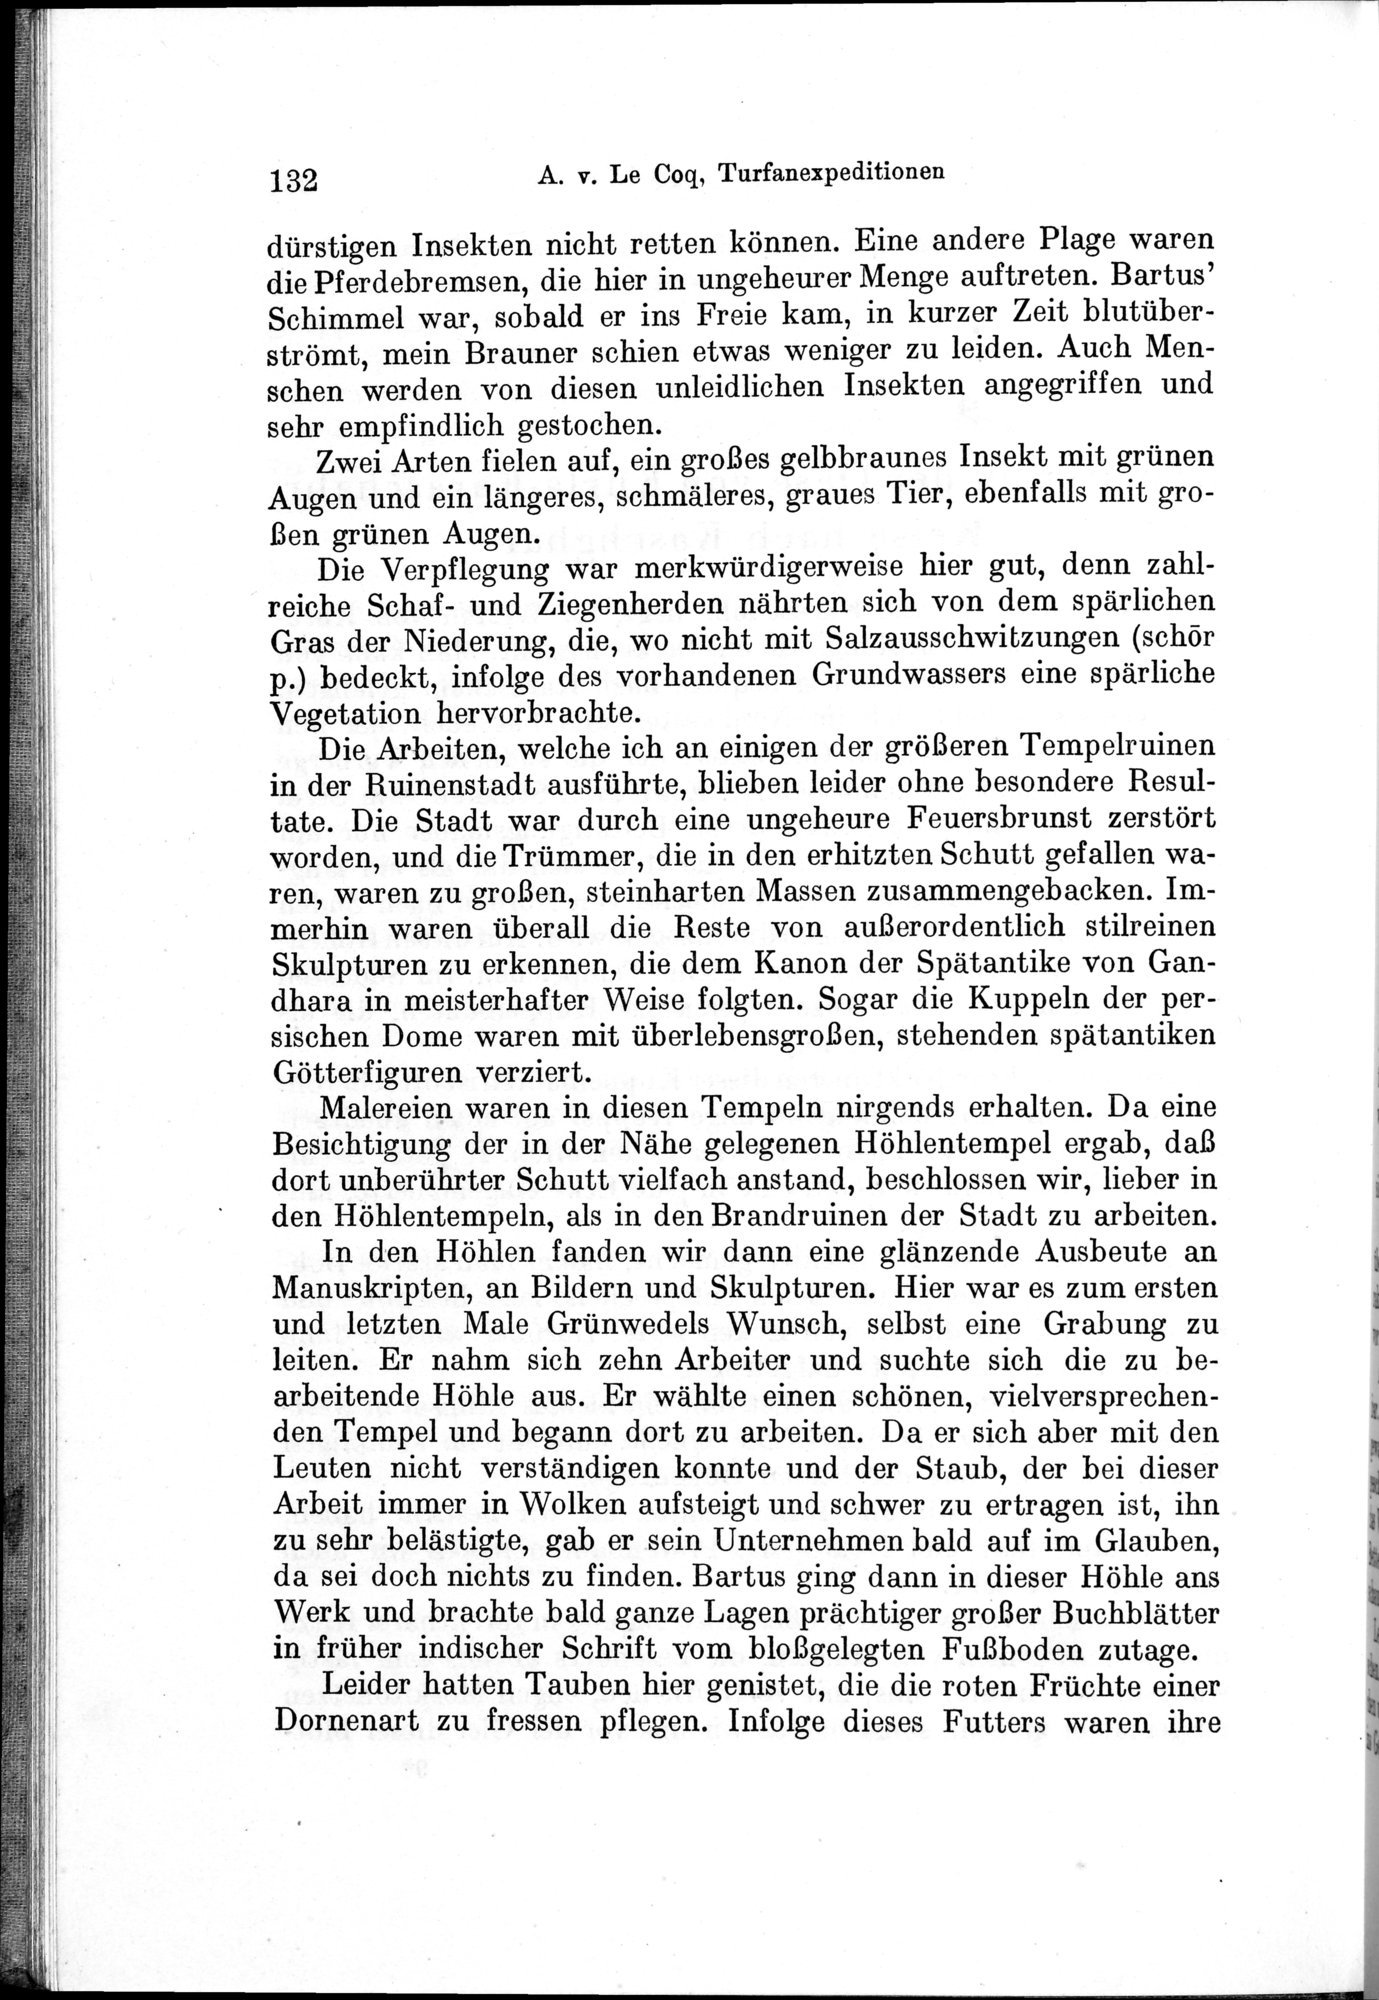 Auf Hellas Spuren in Ostturkistan : vol.1 / Page 190 (Grayscale High Resolution Image)